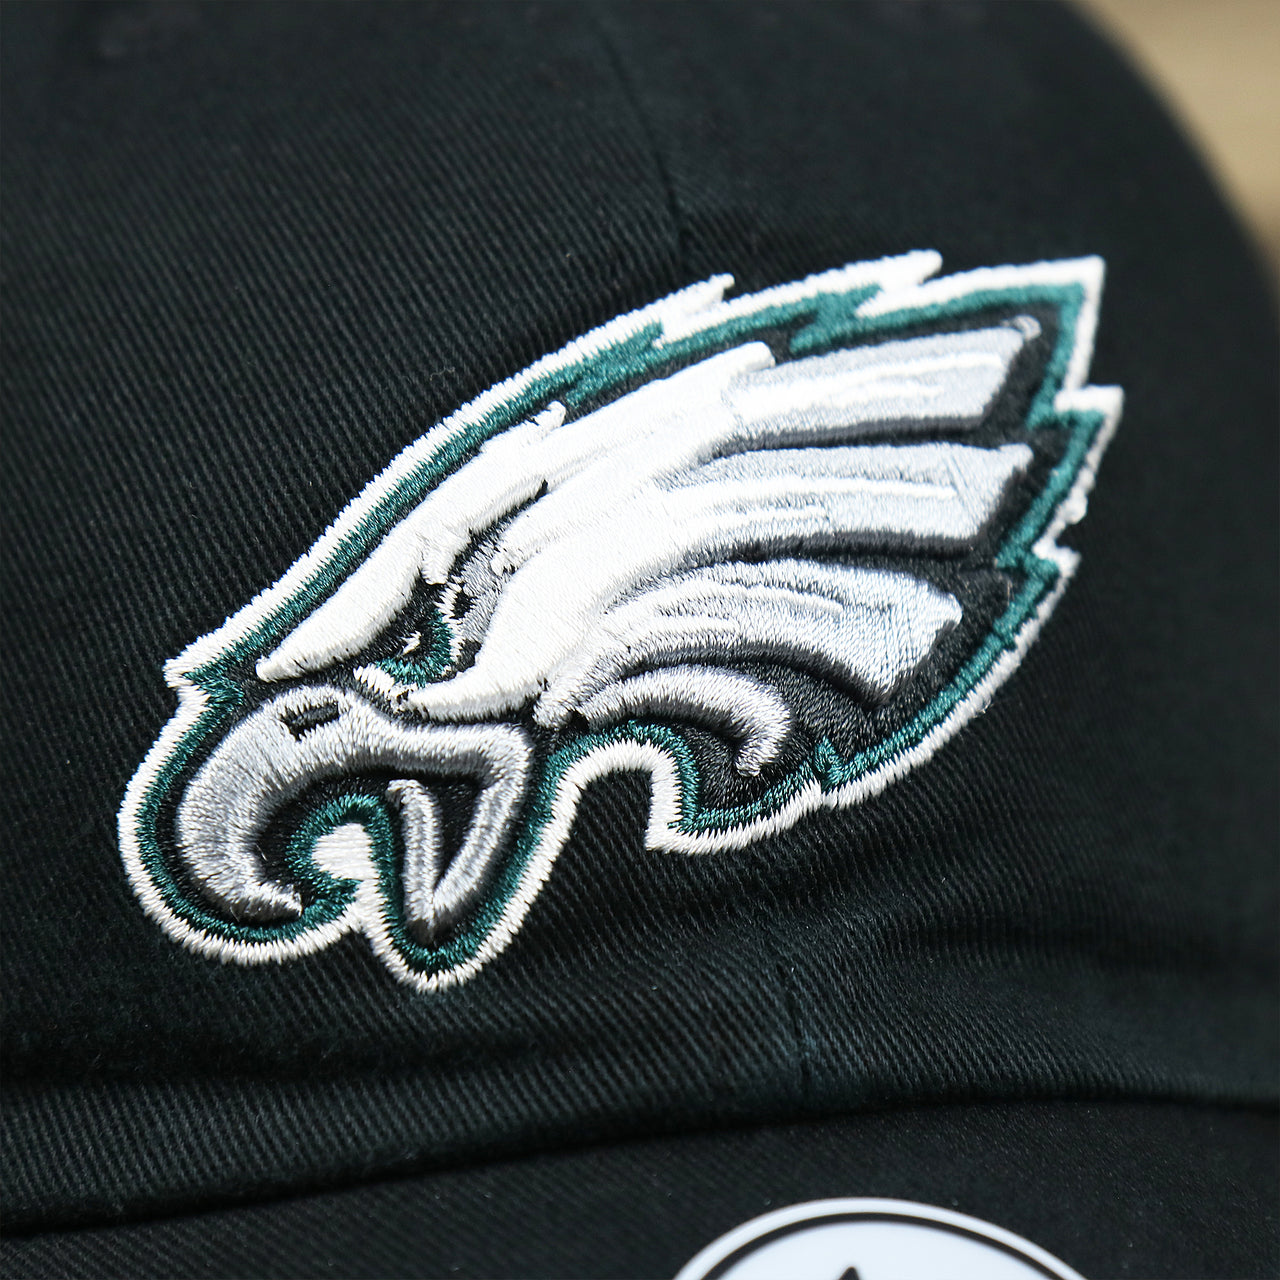 The Eagles Logo on the Philadelphia Eagles Logo Adjustable Dad Hat | Black Dad Hat